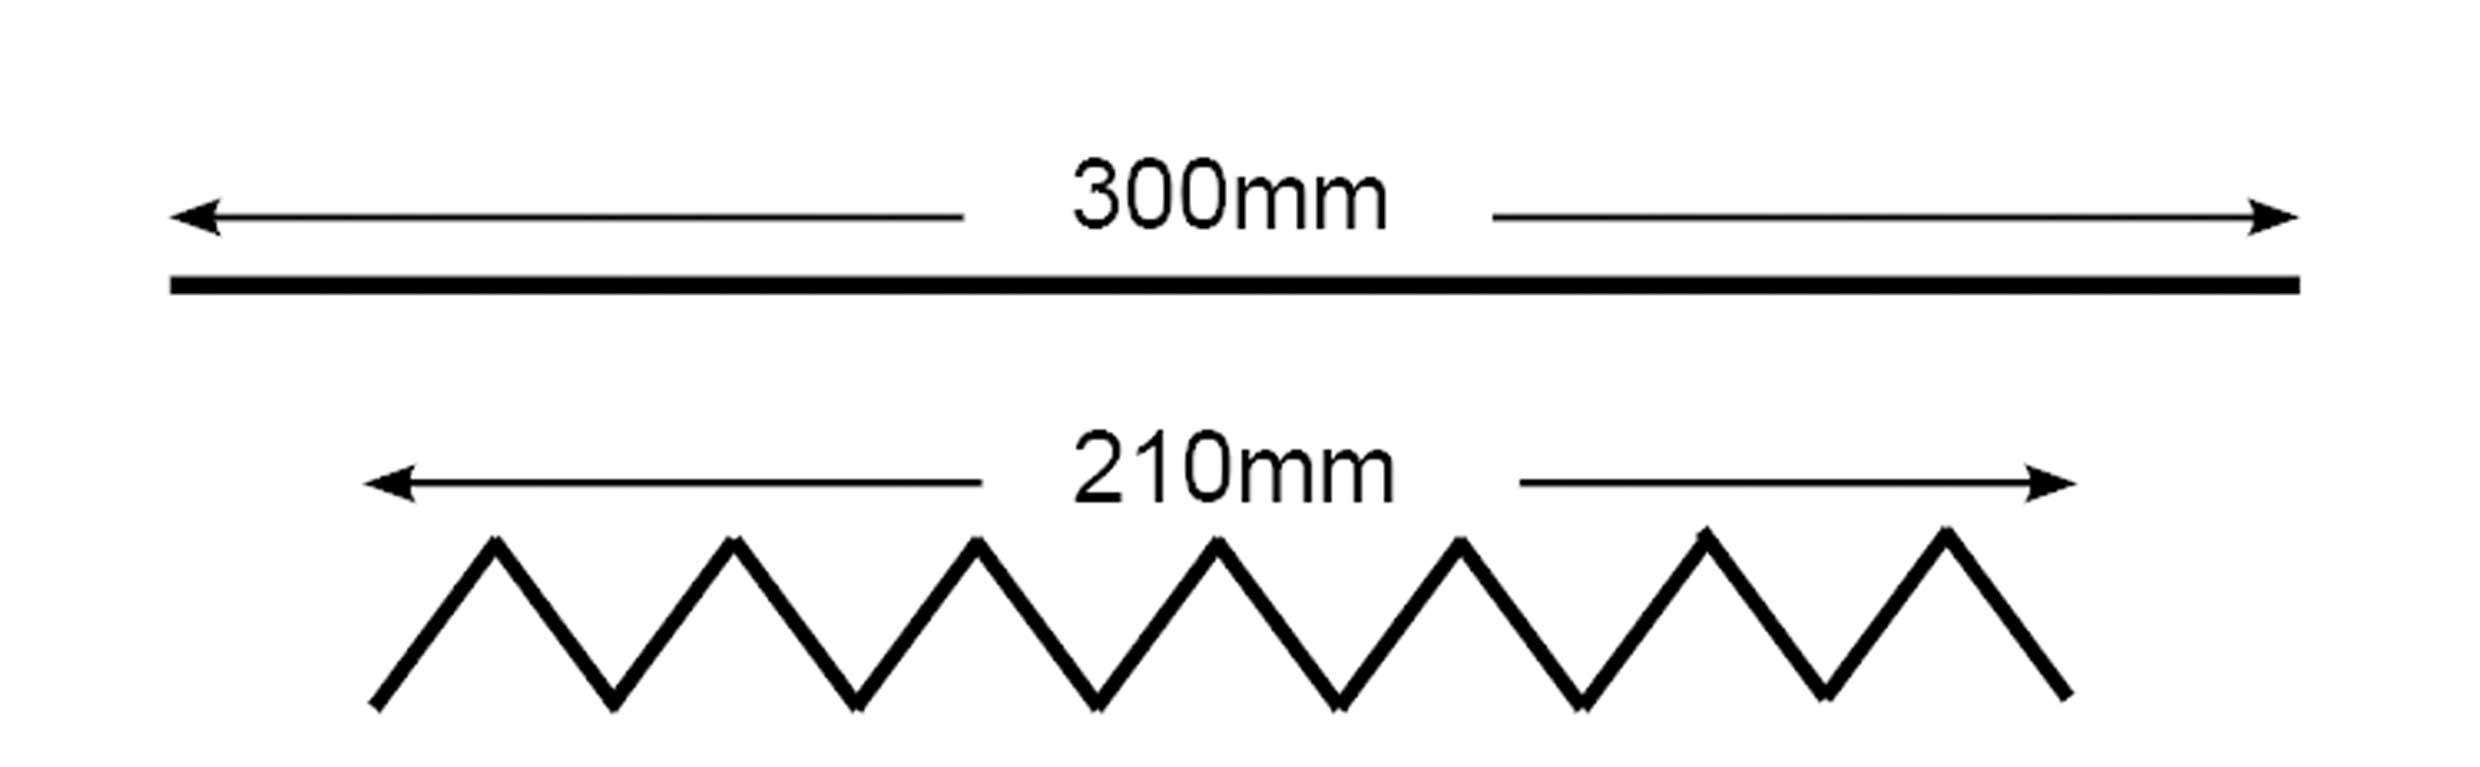 Paper-diagram